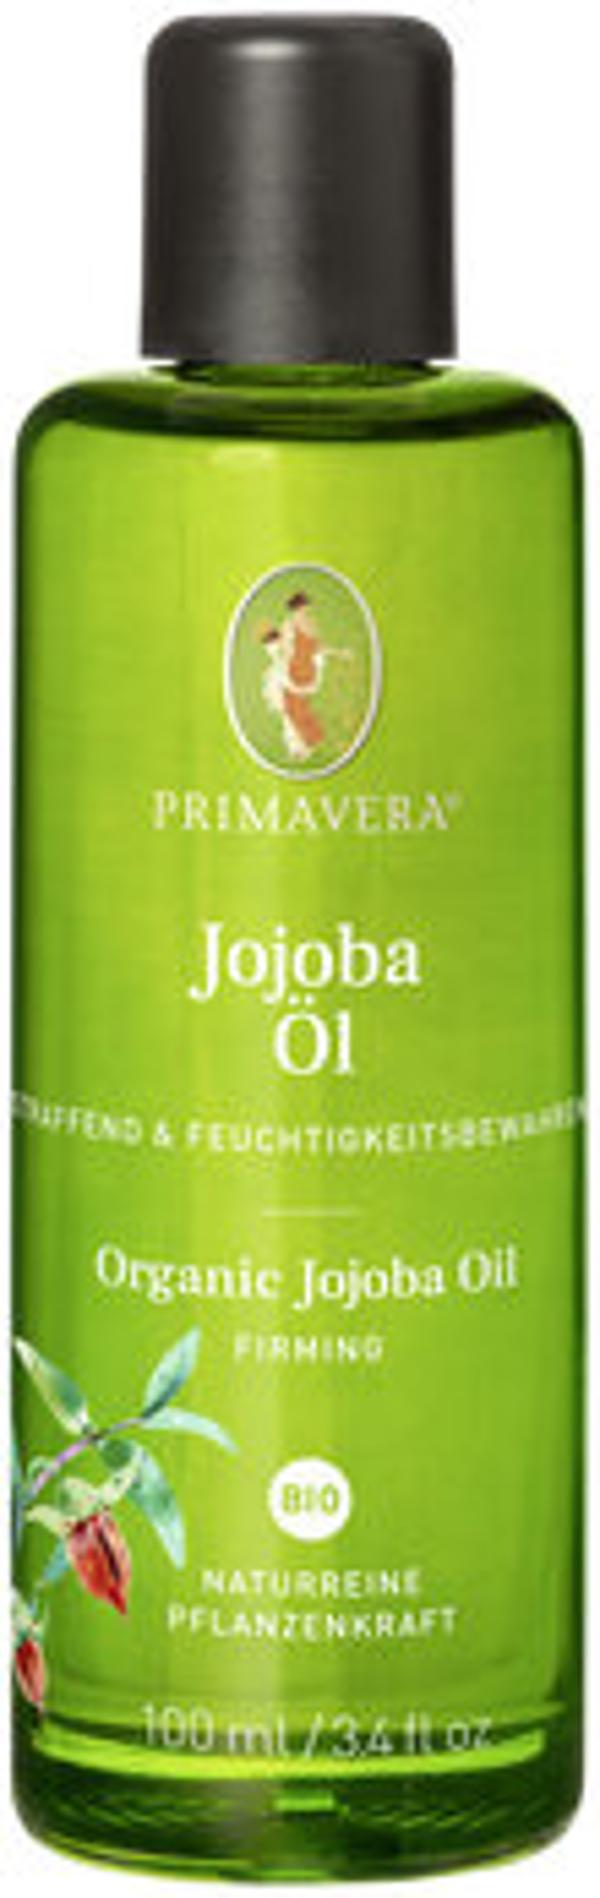 Produktfoto zu Jojobaöl, 100 ml